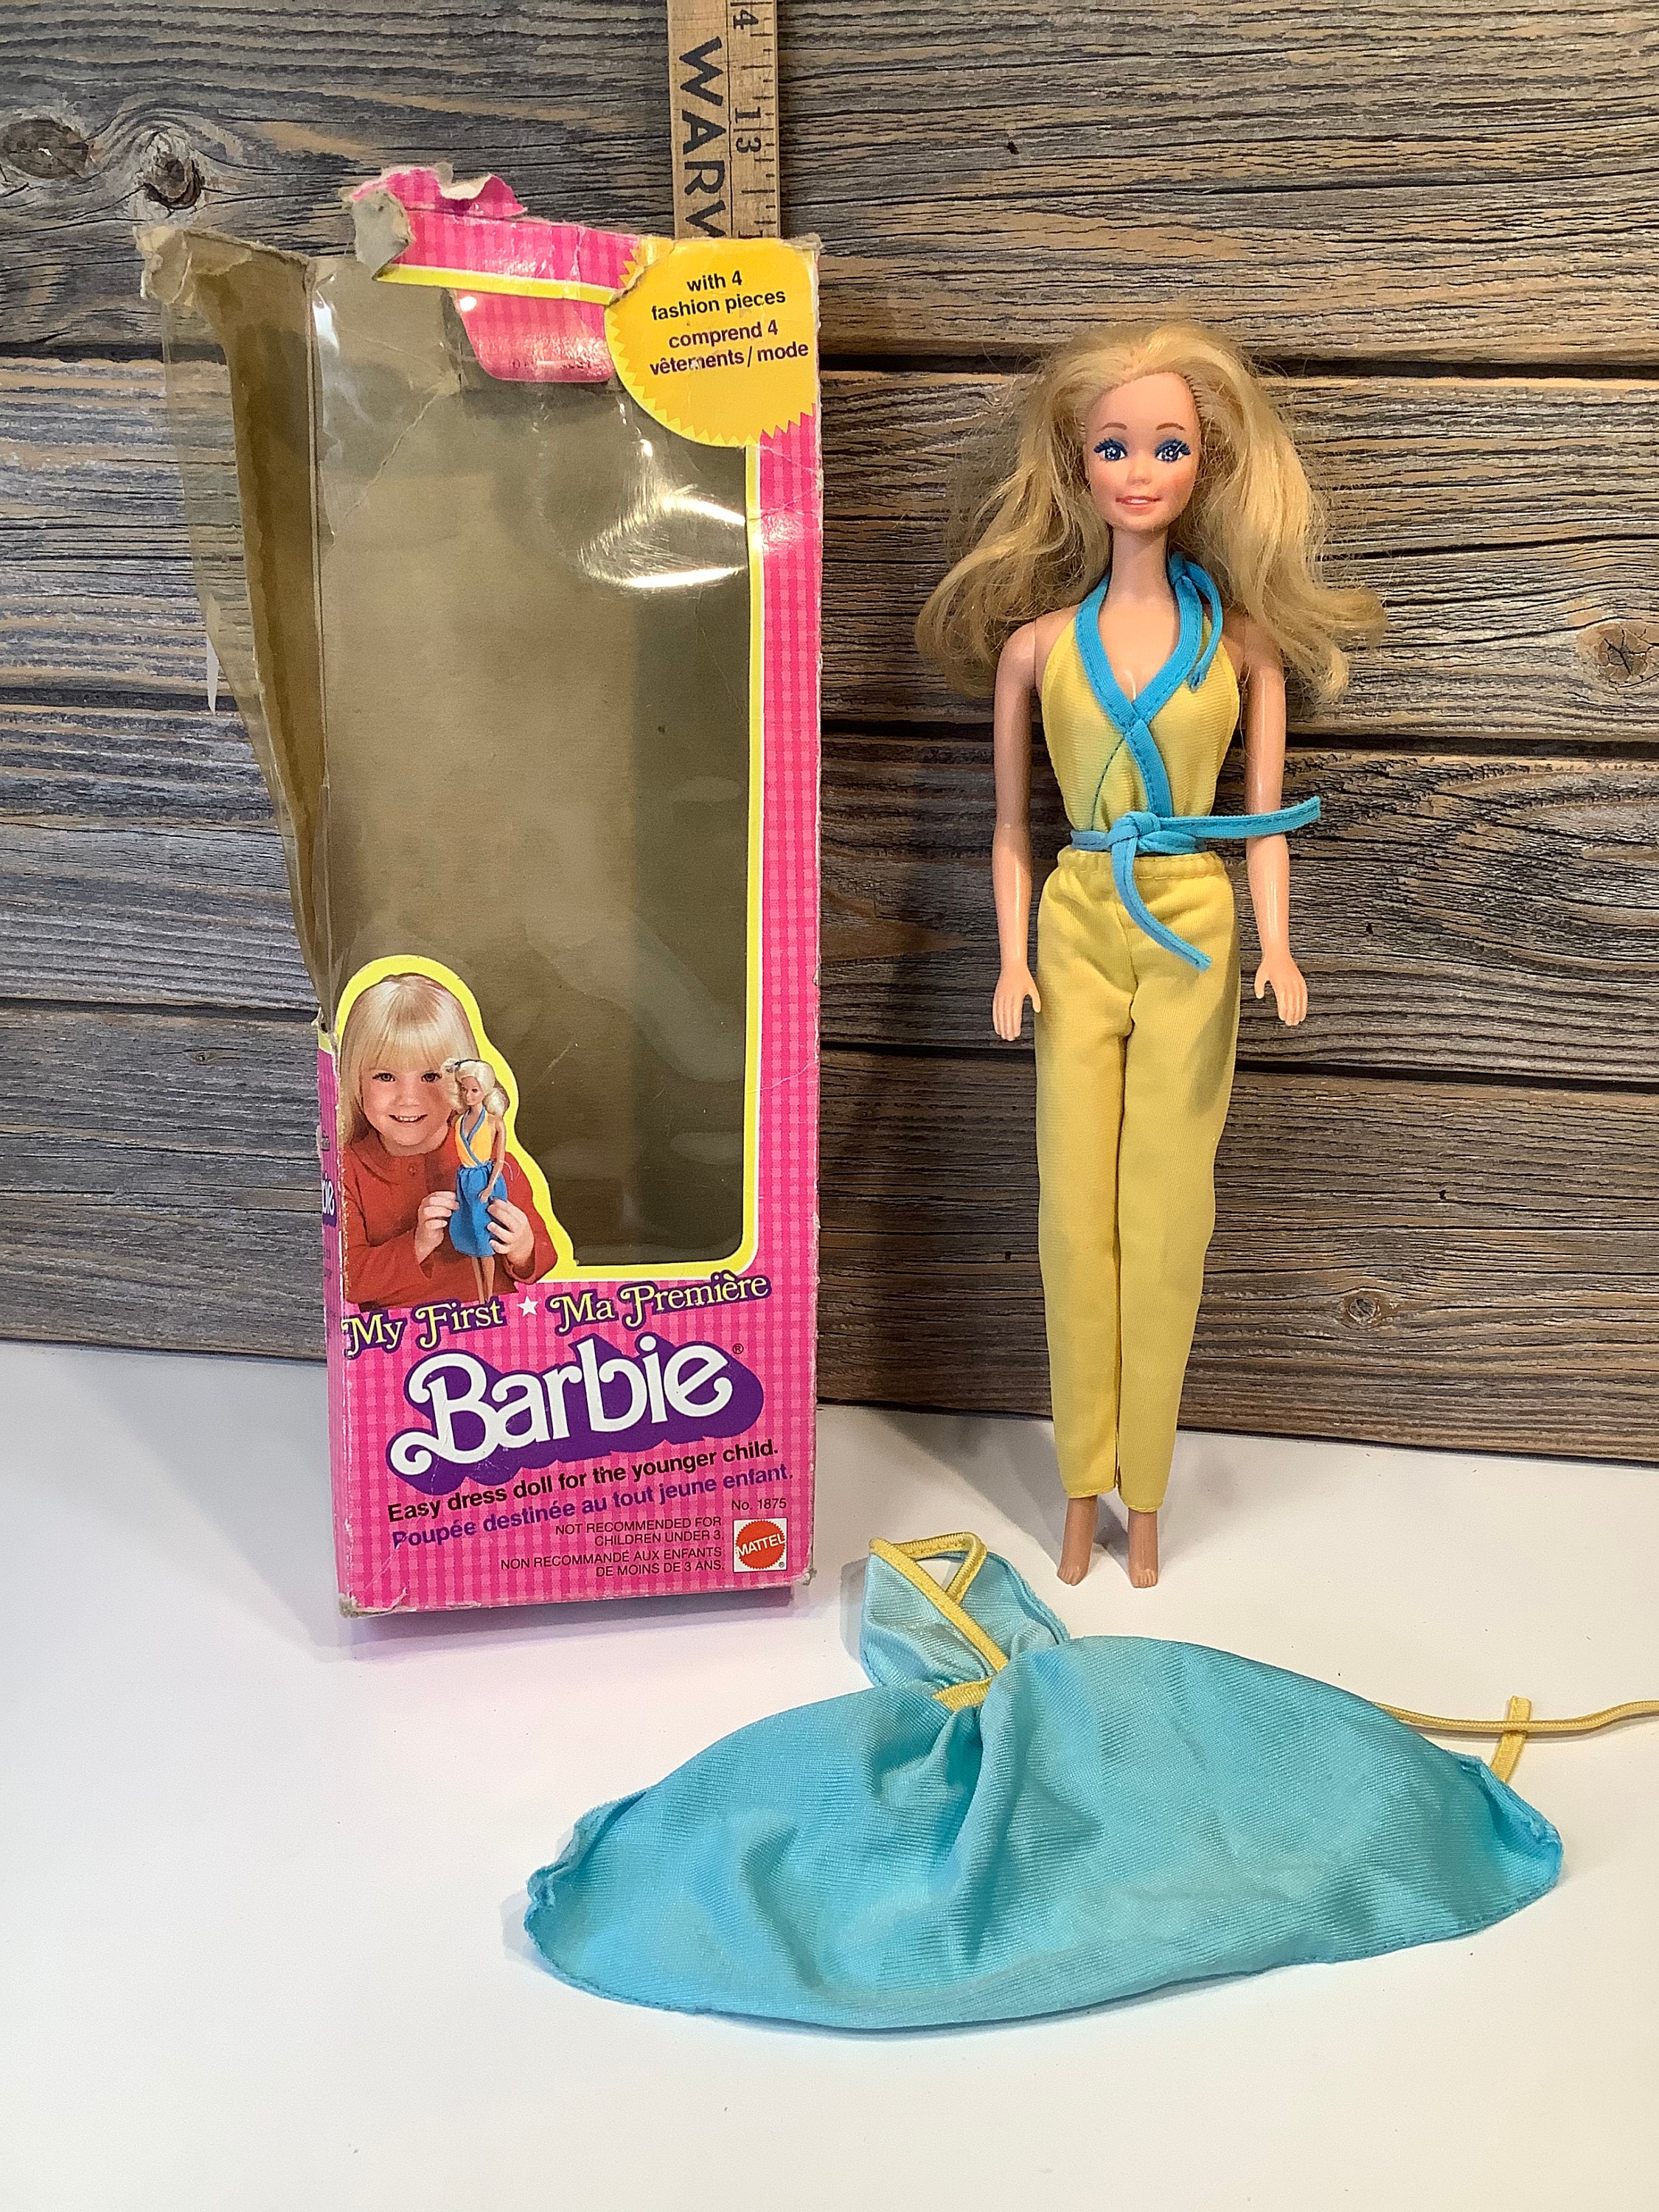 Lot de meubles de poupée Barbie Mattel vintage des années 1980 des années  90, meubles Barbie en plastique rose -  Canada